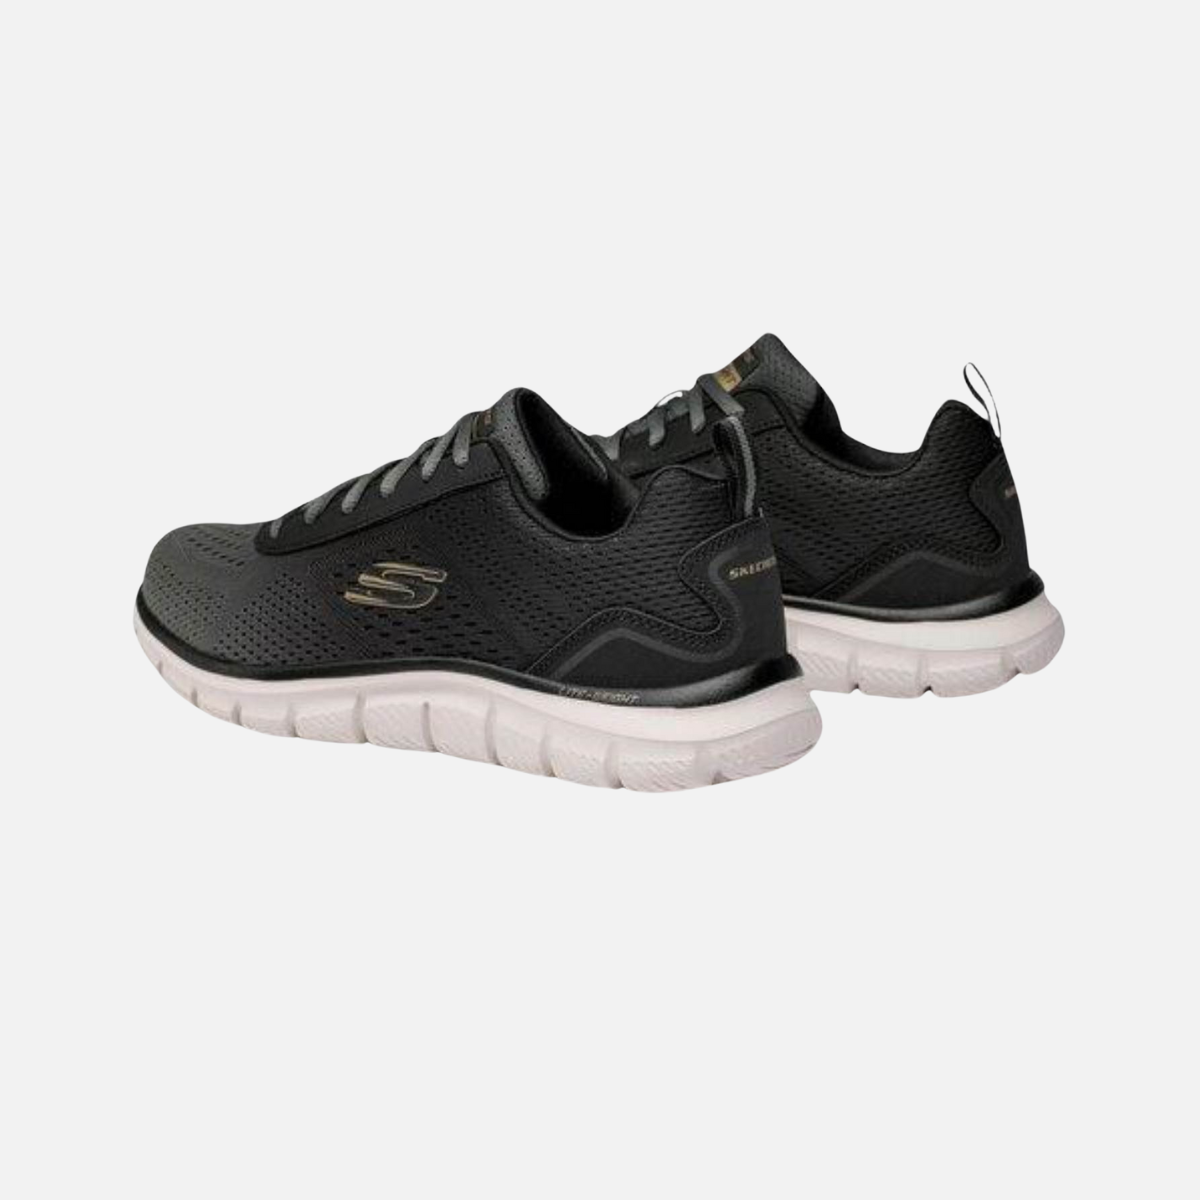 Skechers Track-Ripkent Men's Training Shoes -Olive/Black